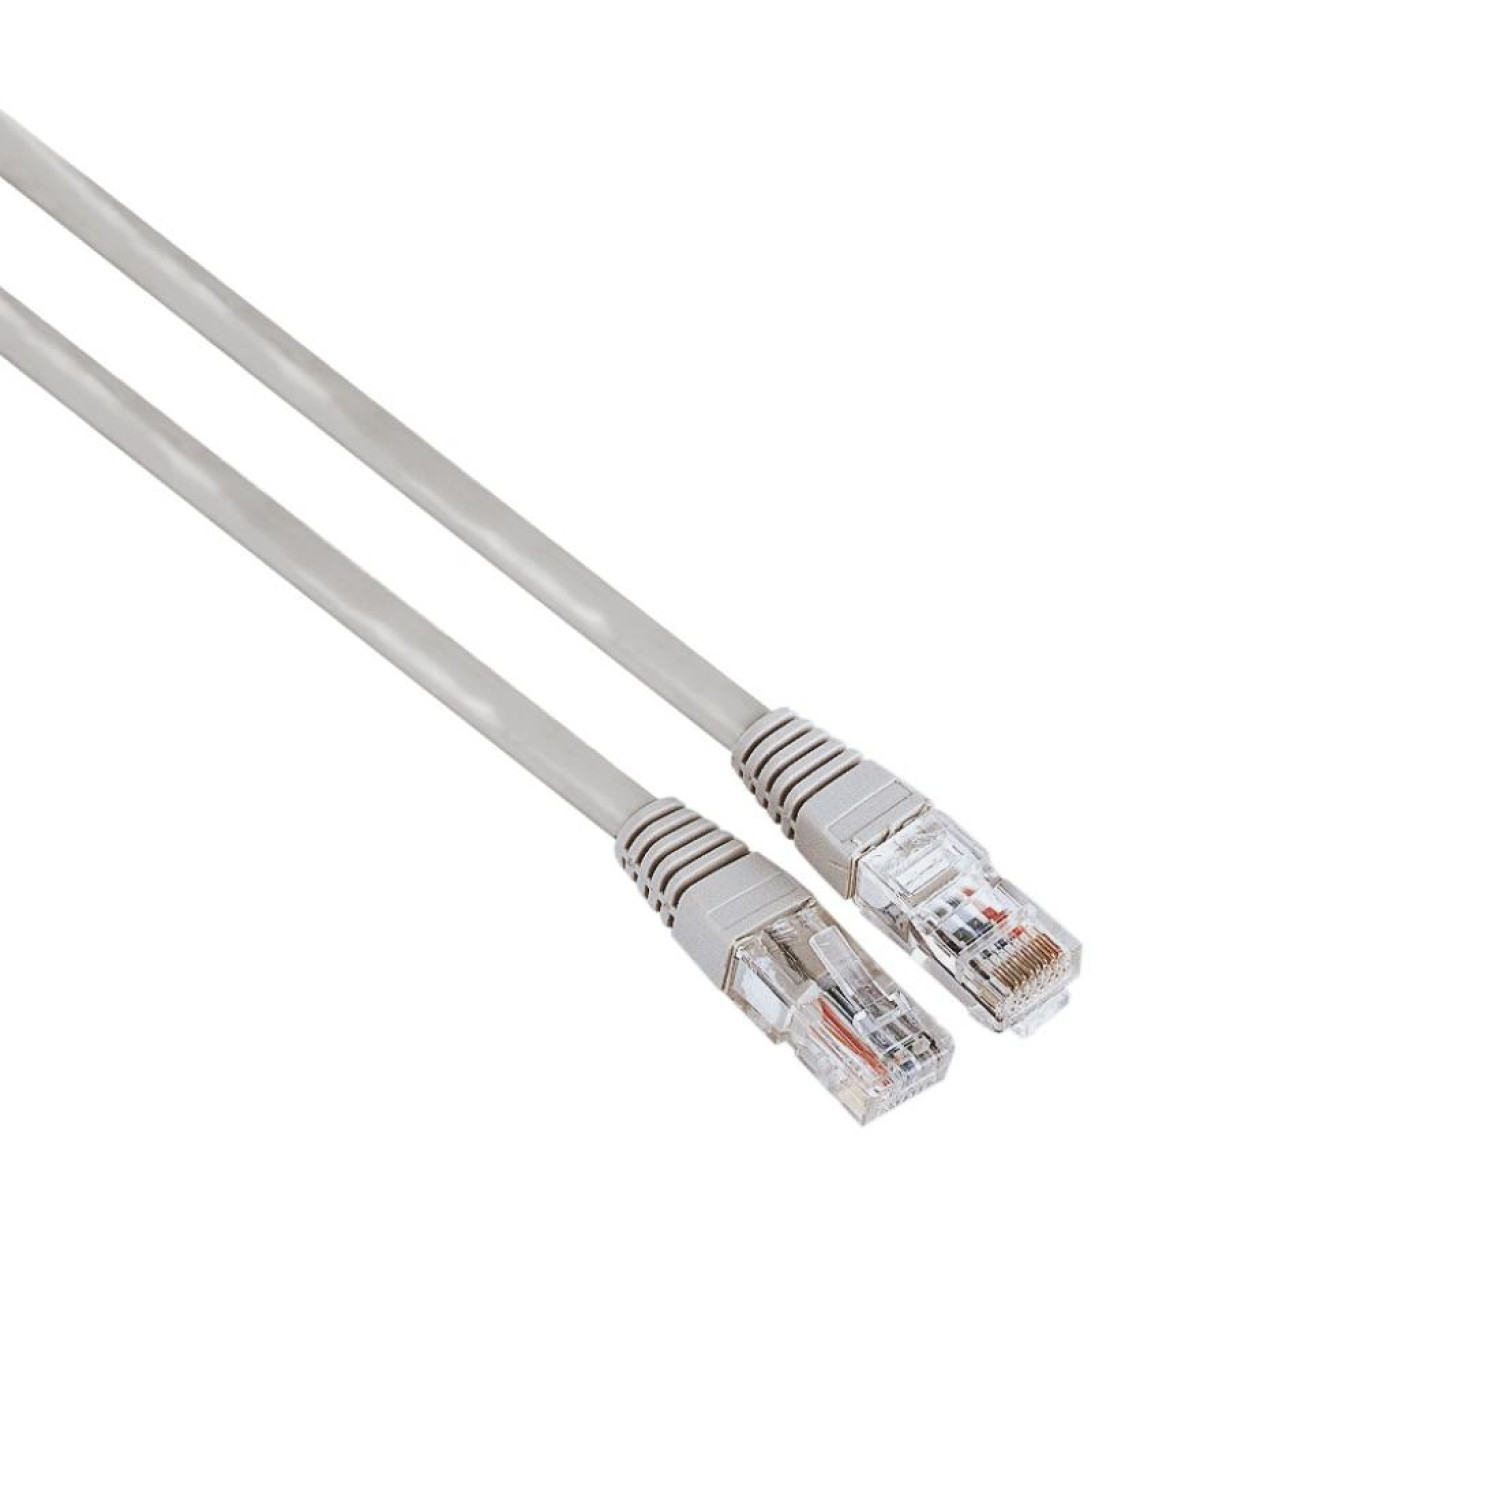 Мрежов кабел HAMA, CAT 5e, FTP/UTP, RJ-45 - RJ-45, 10 m, екраниран, Сив, булк опаковка